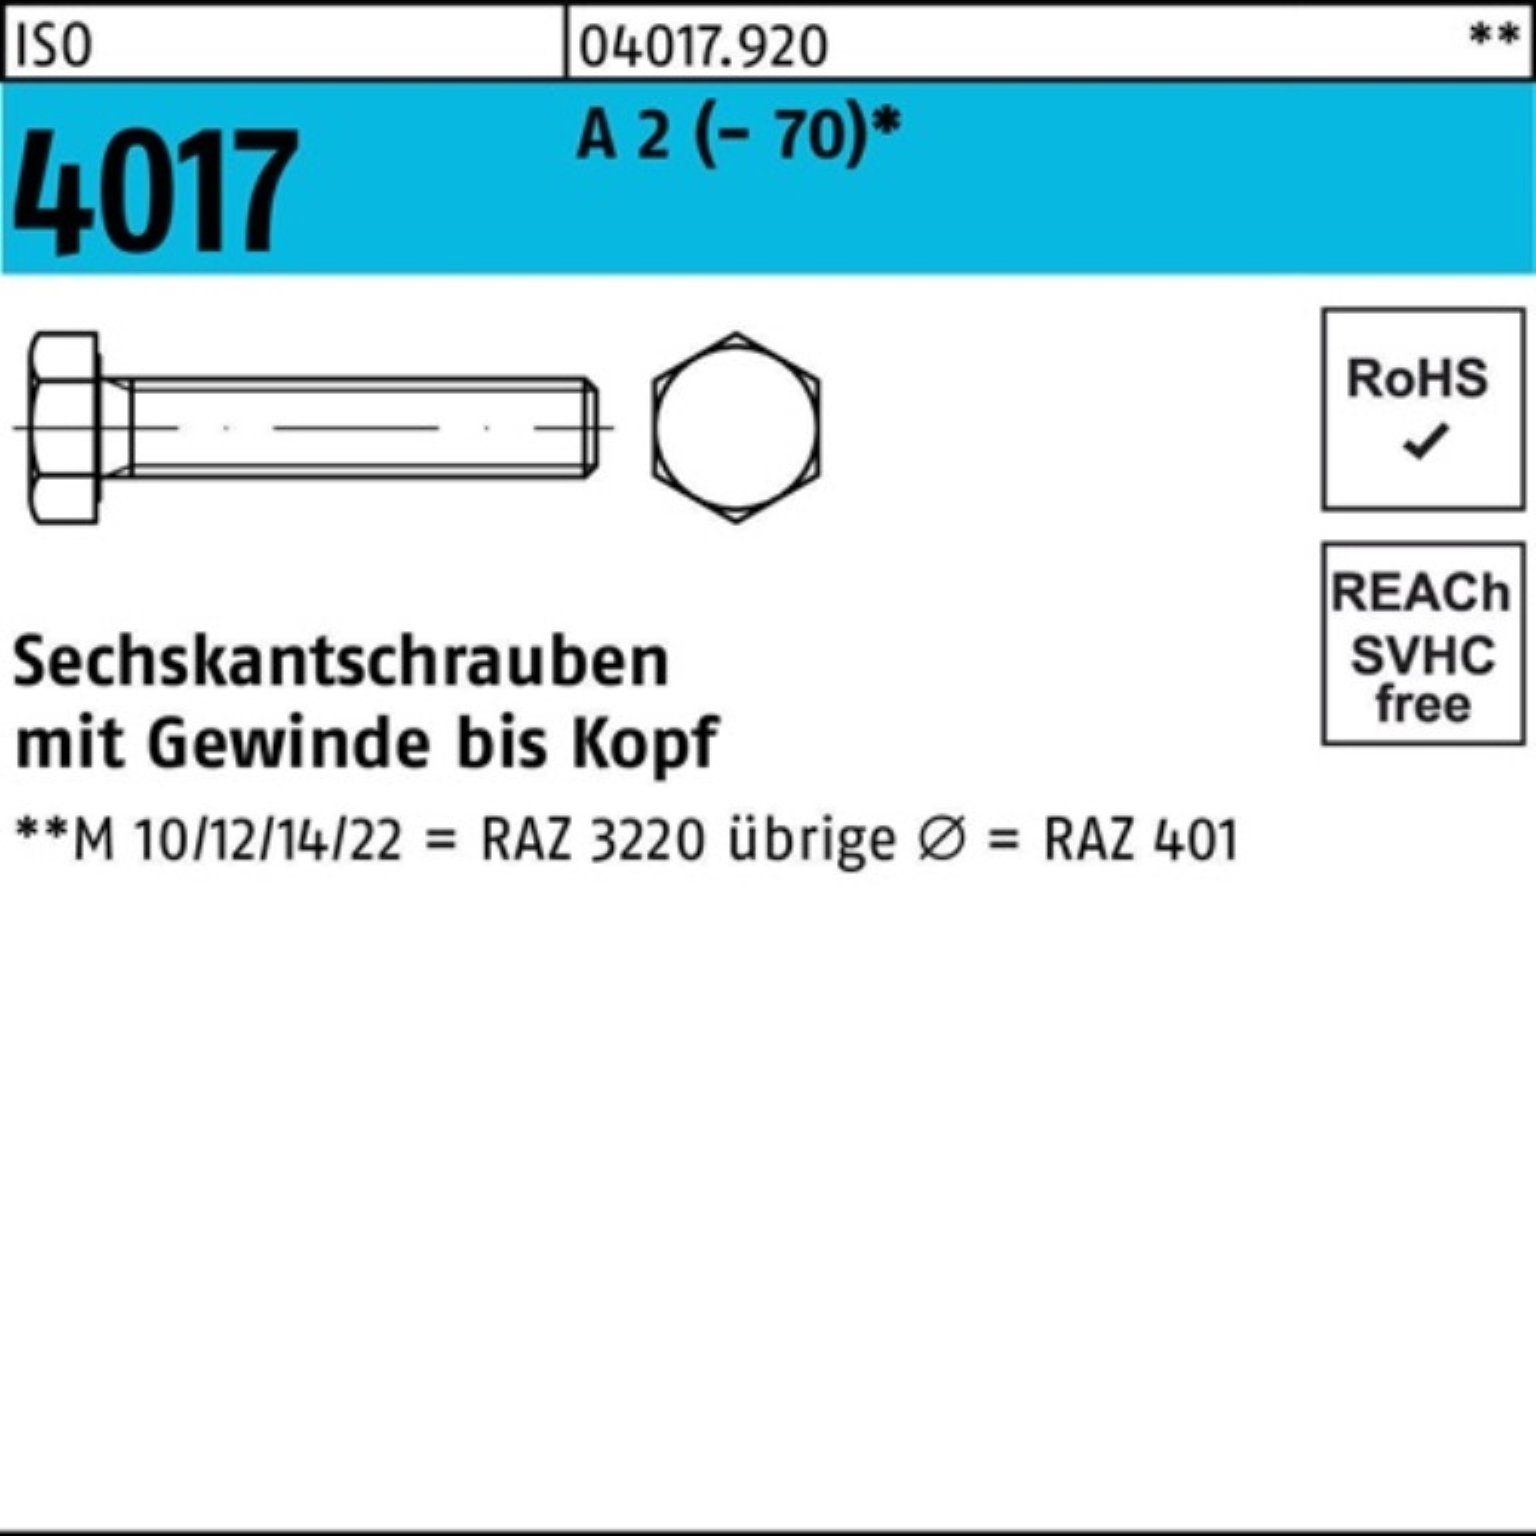 Bufab Sechskantschraube A 4017 130 Sechskantschraube 100er VG (70) M36x Pack 2 ISO 1 Stück